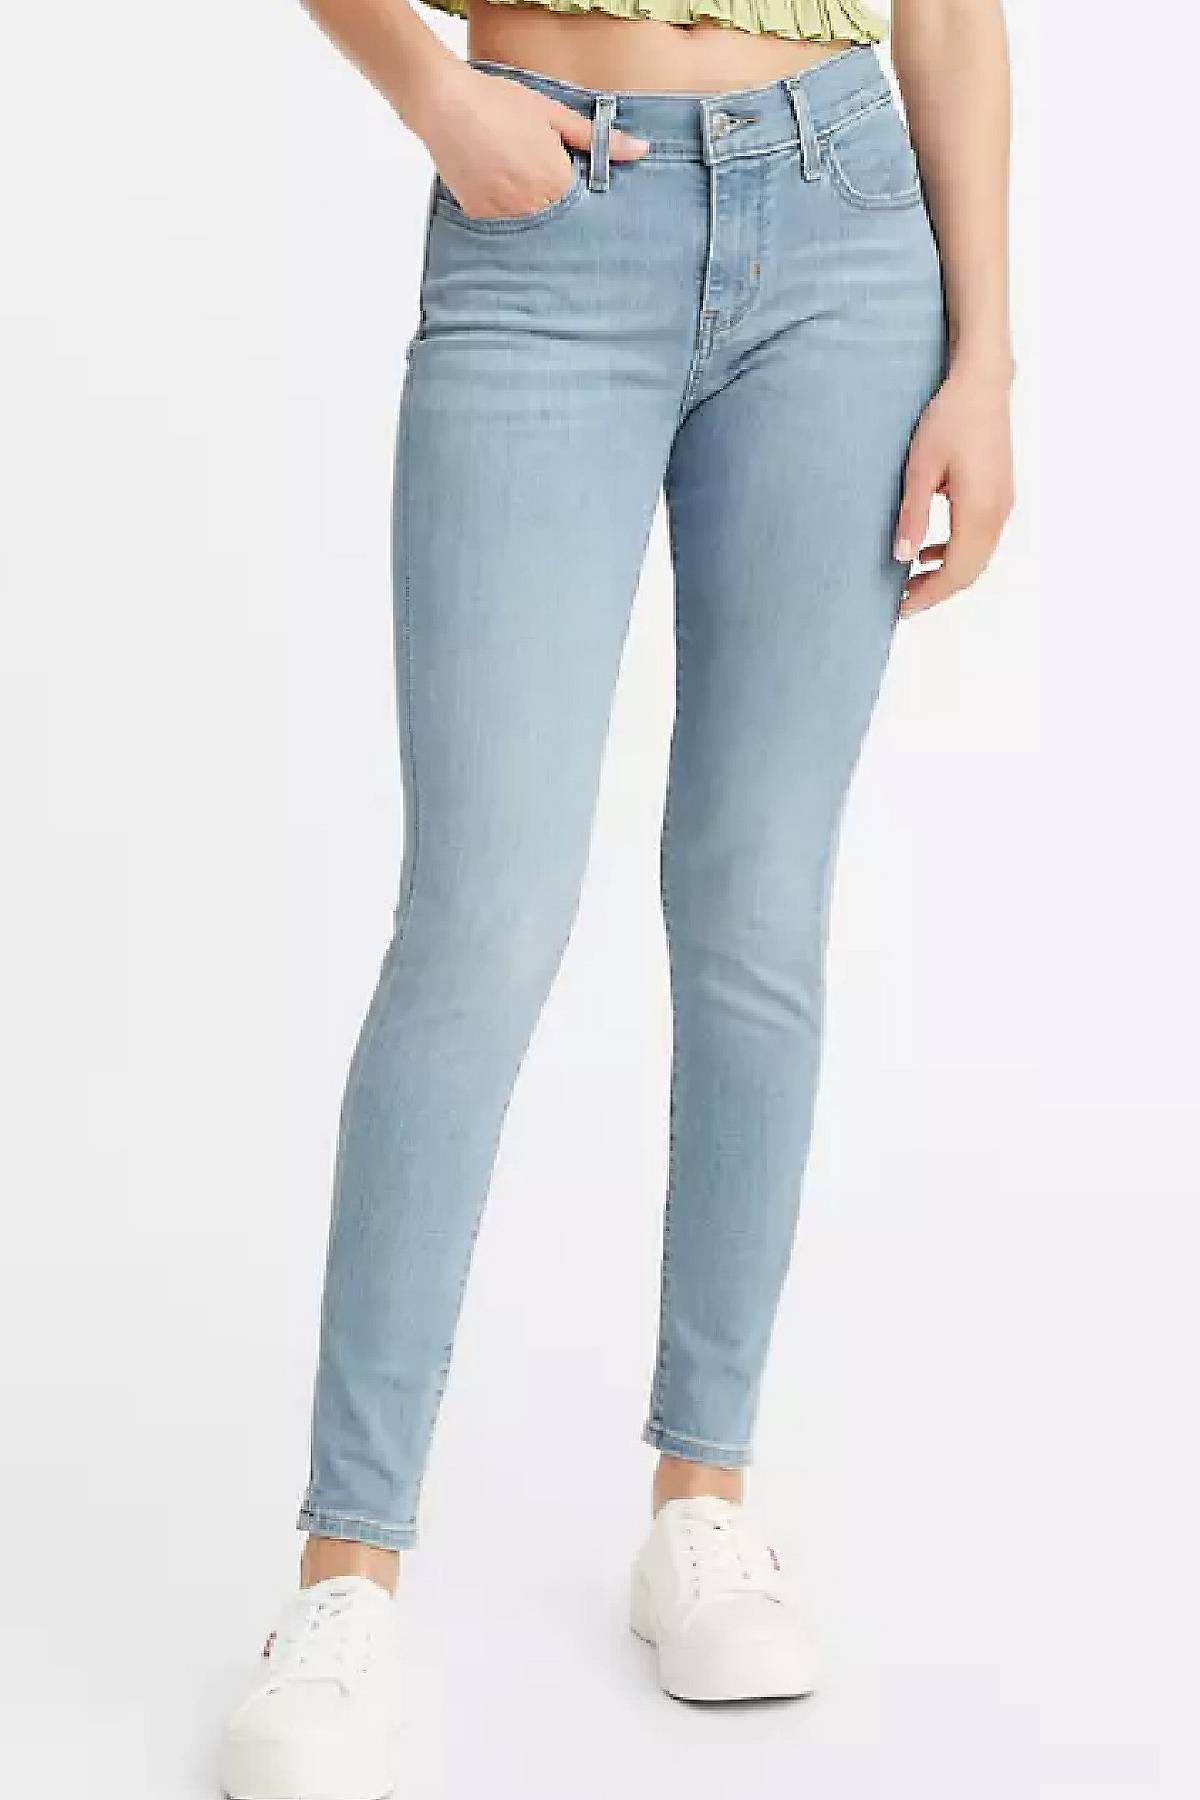 Model wearing 710 Super Skinny jeans